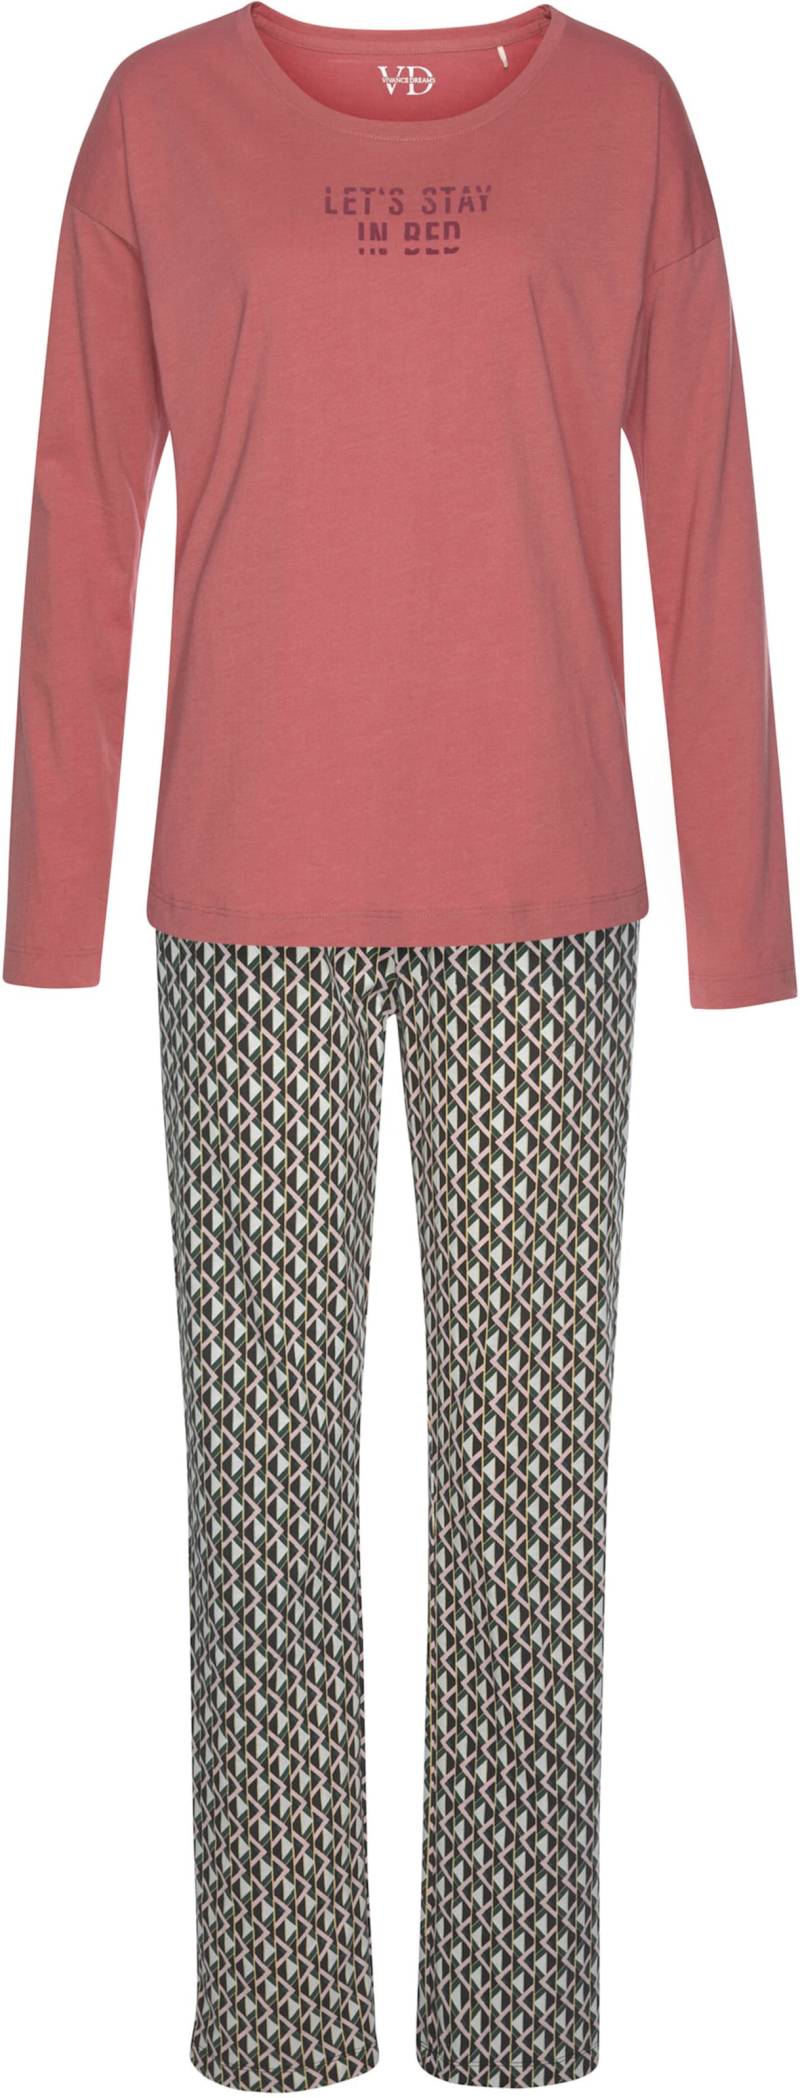 Pyjama in rosenholz von Vivance Dreams